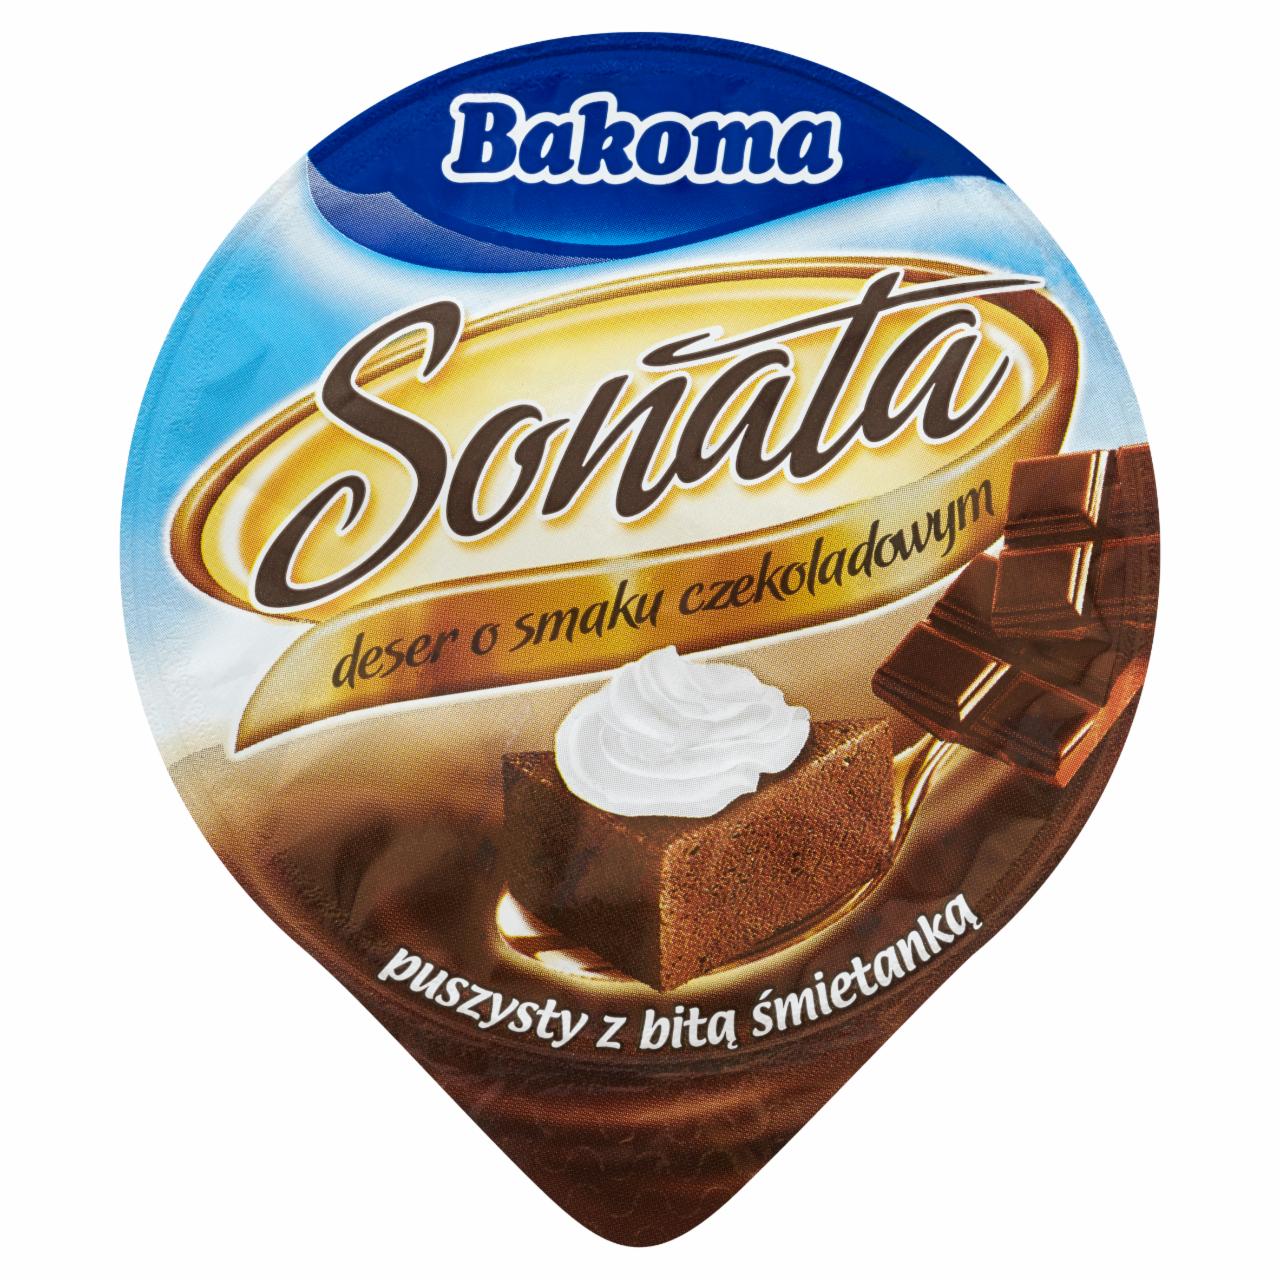 Zdjęcia - Bakoma Sonata Deser o smaku czekoladowym puszysty z bitą śmietanką 90 g